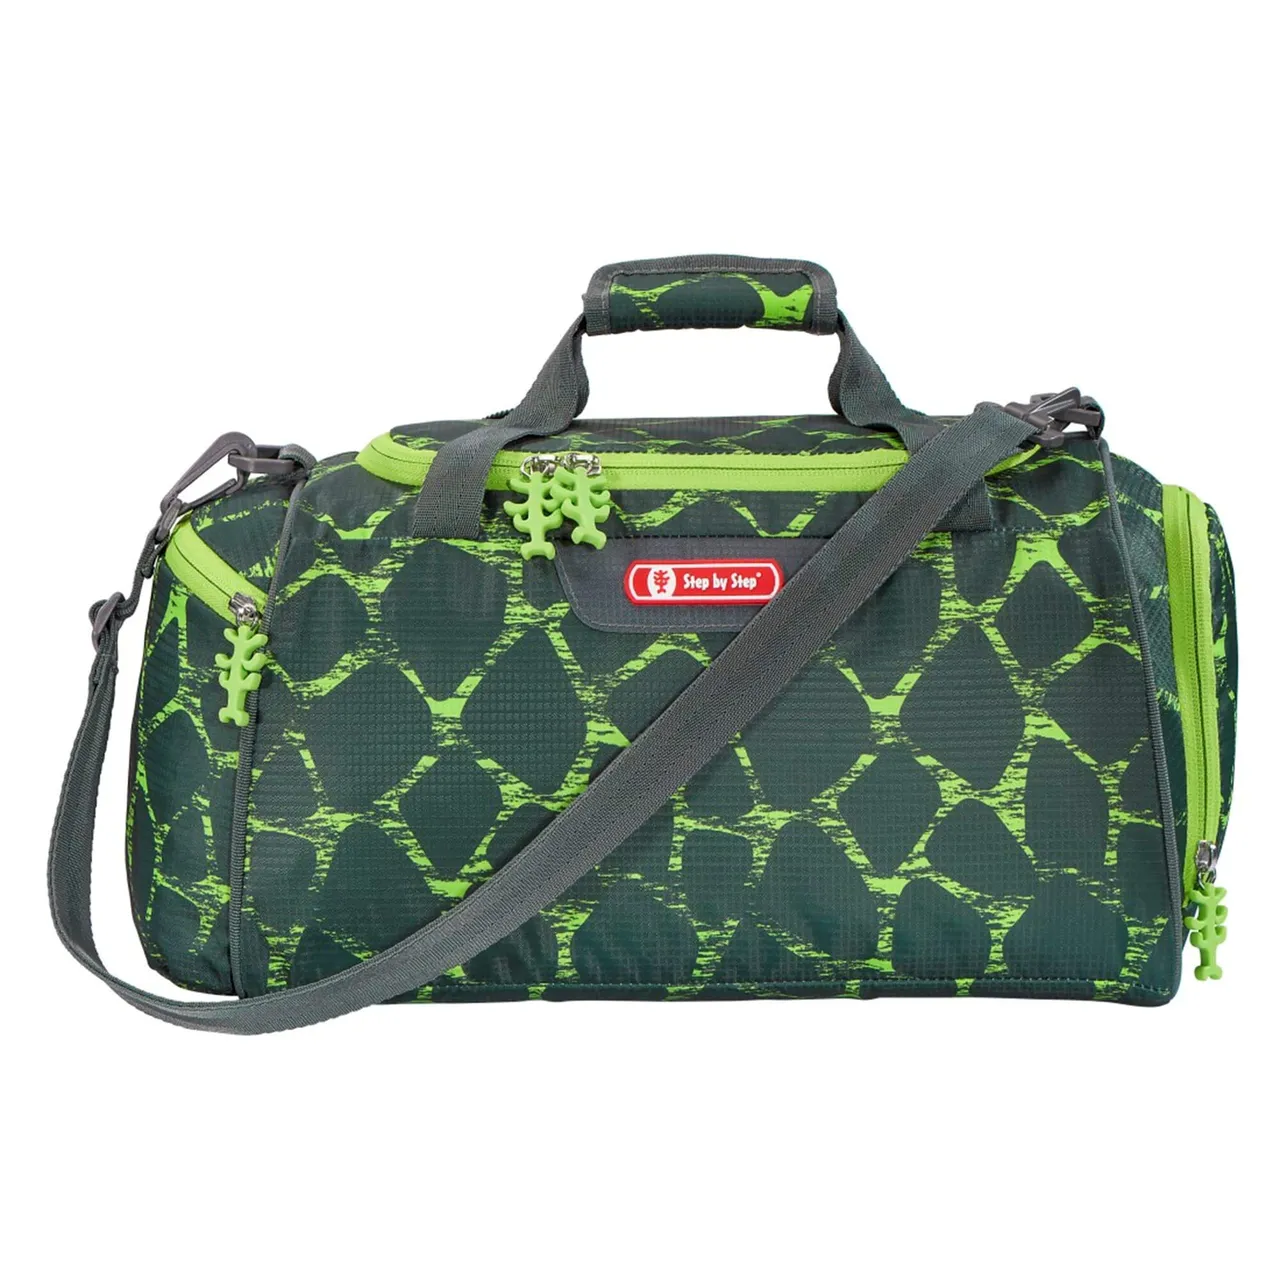 Handtaschen grün -